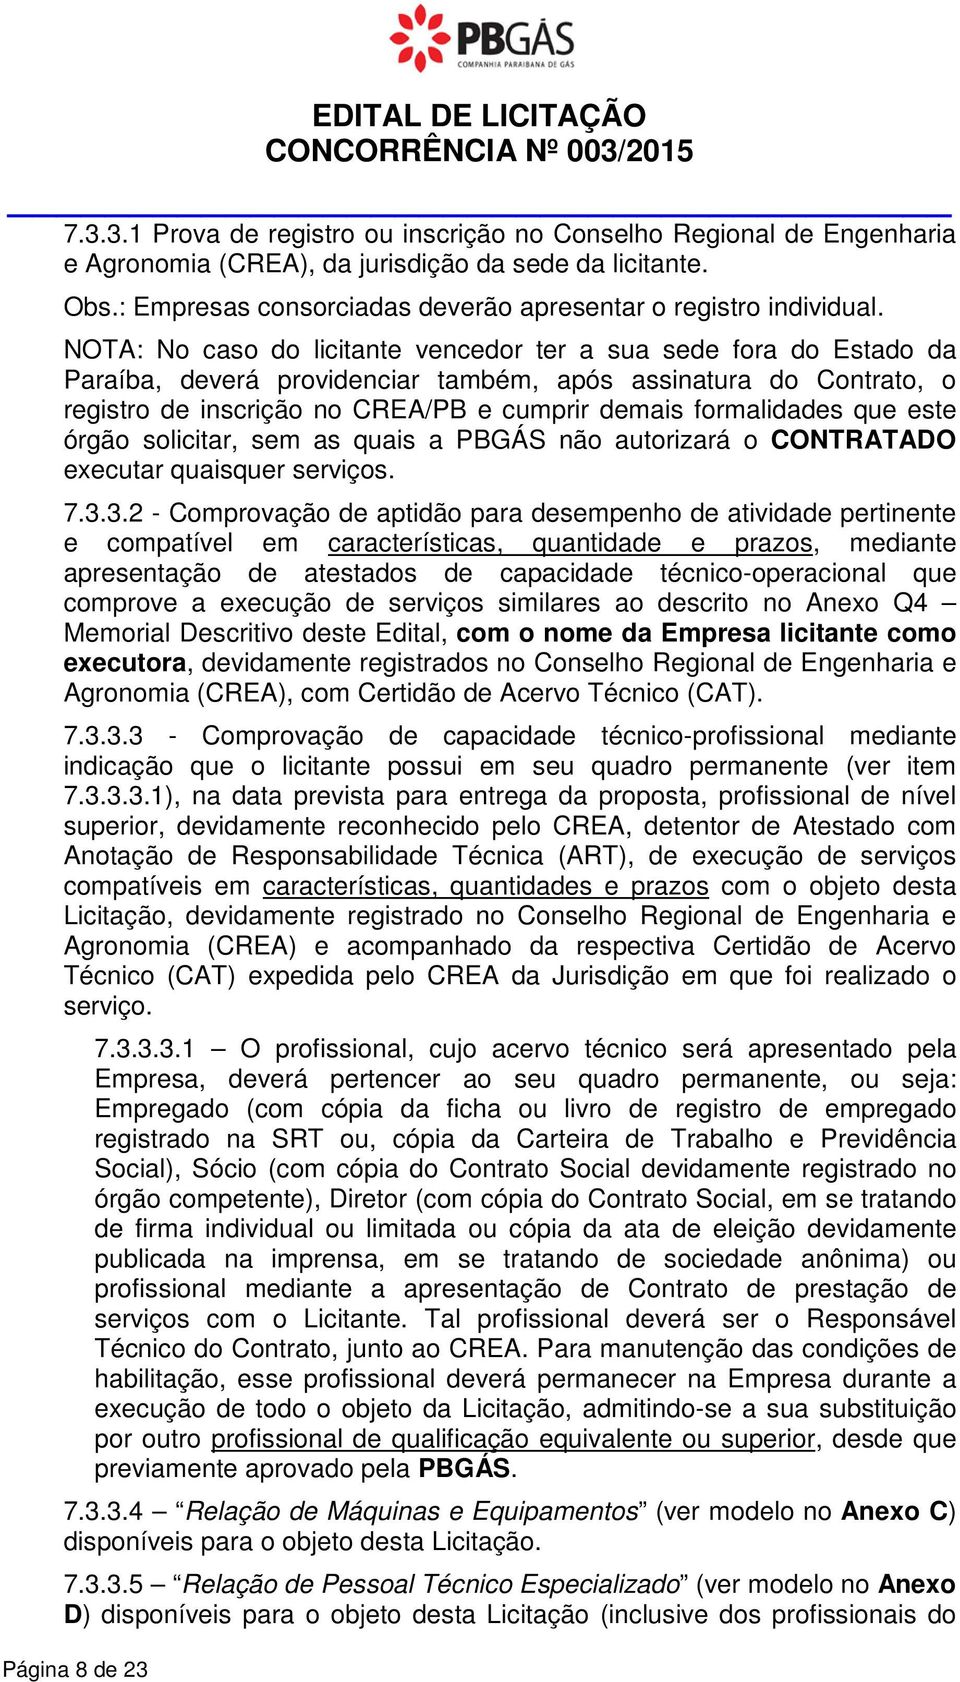 NOTA: No caso do licitante vencedor ter a sua sede fora do Estado da Paraíba, deverá providenciar também, após assinatura do Contrato, o registro de inscrição no CREA/PB e cumprir demais formalidades